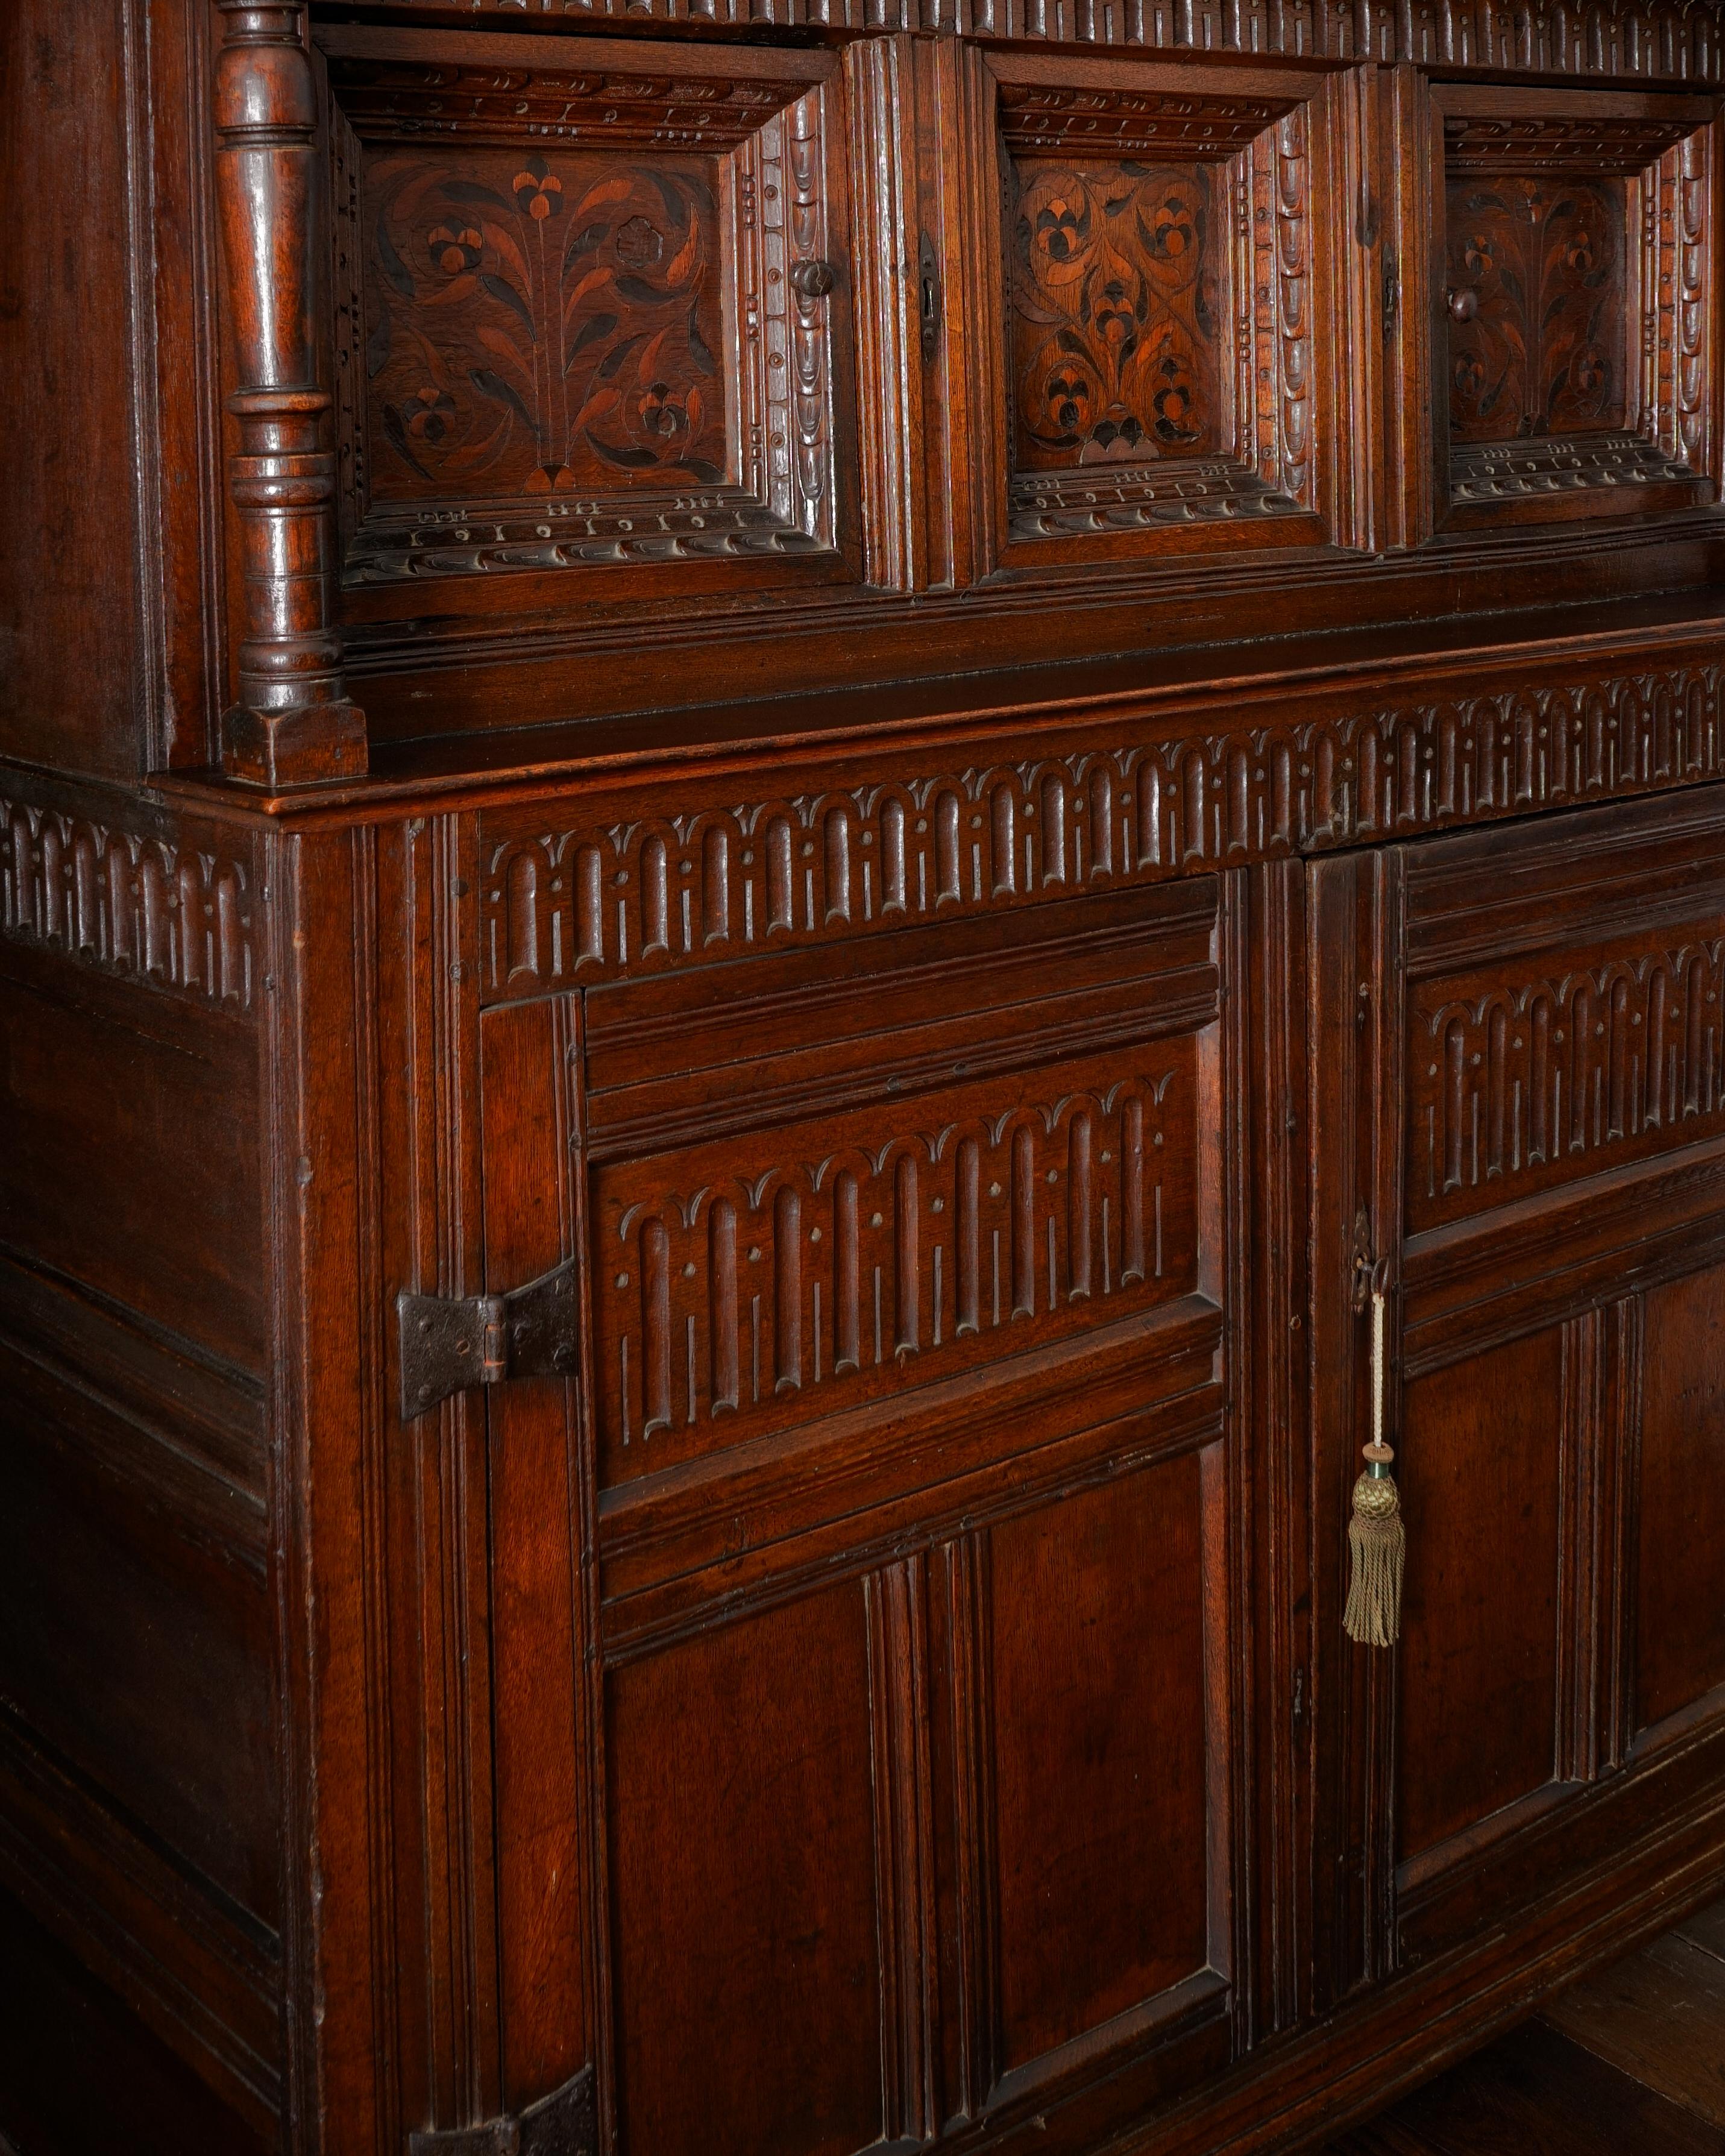 CHARLES I, ARMOIRE DE COUR EN CHÊNE ET MARQUETERIE
Yorkshire, Angleterre, Vers 1630

La frise est sculptée sur trois côtés et repose sur des colonnes terminales tournées en balustre et en moulinet. Elle renferme deux portes d'armoire à panneaux